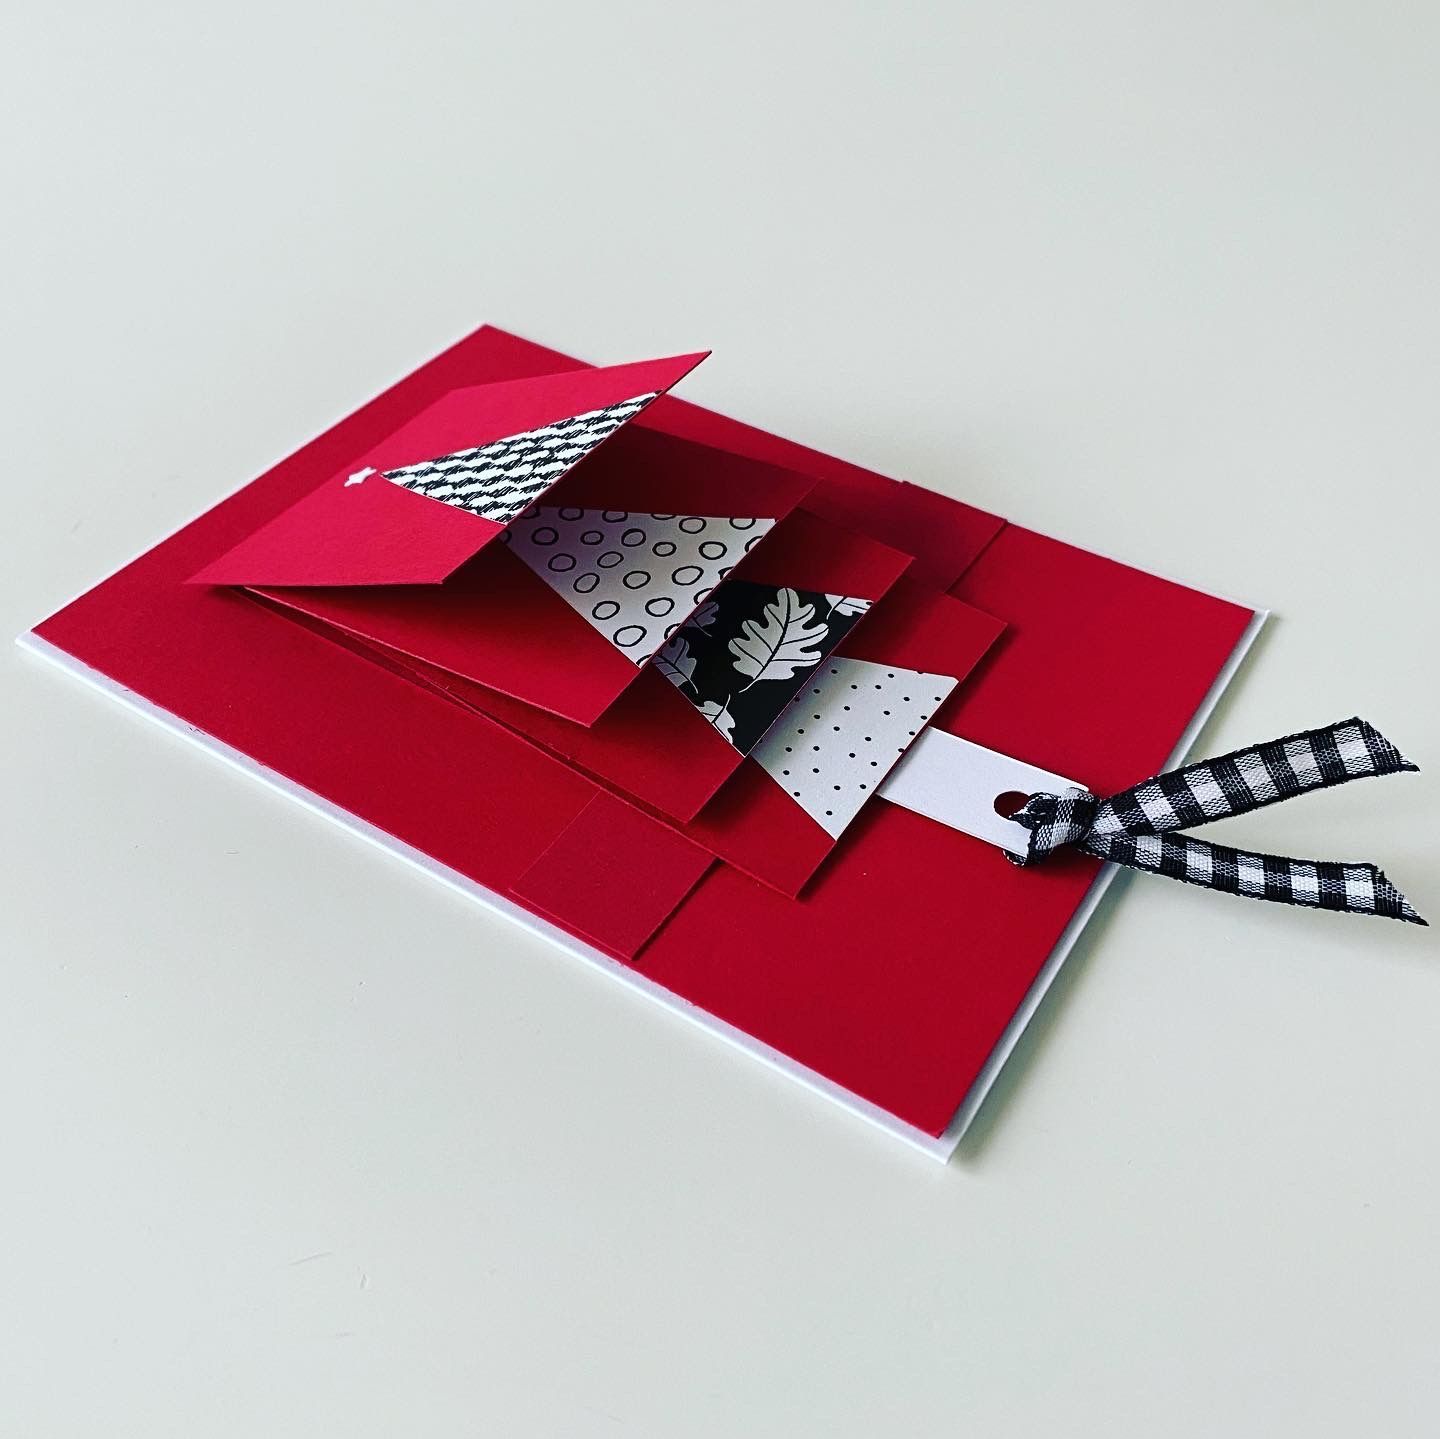 Rote Weihnachtskarte mit Tannenbaum, gebastelt und fotografiert von Kathrin Kindermann